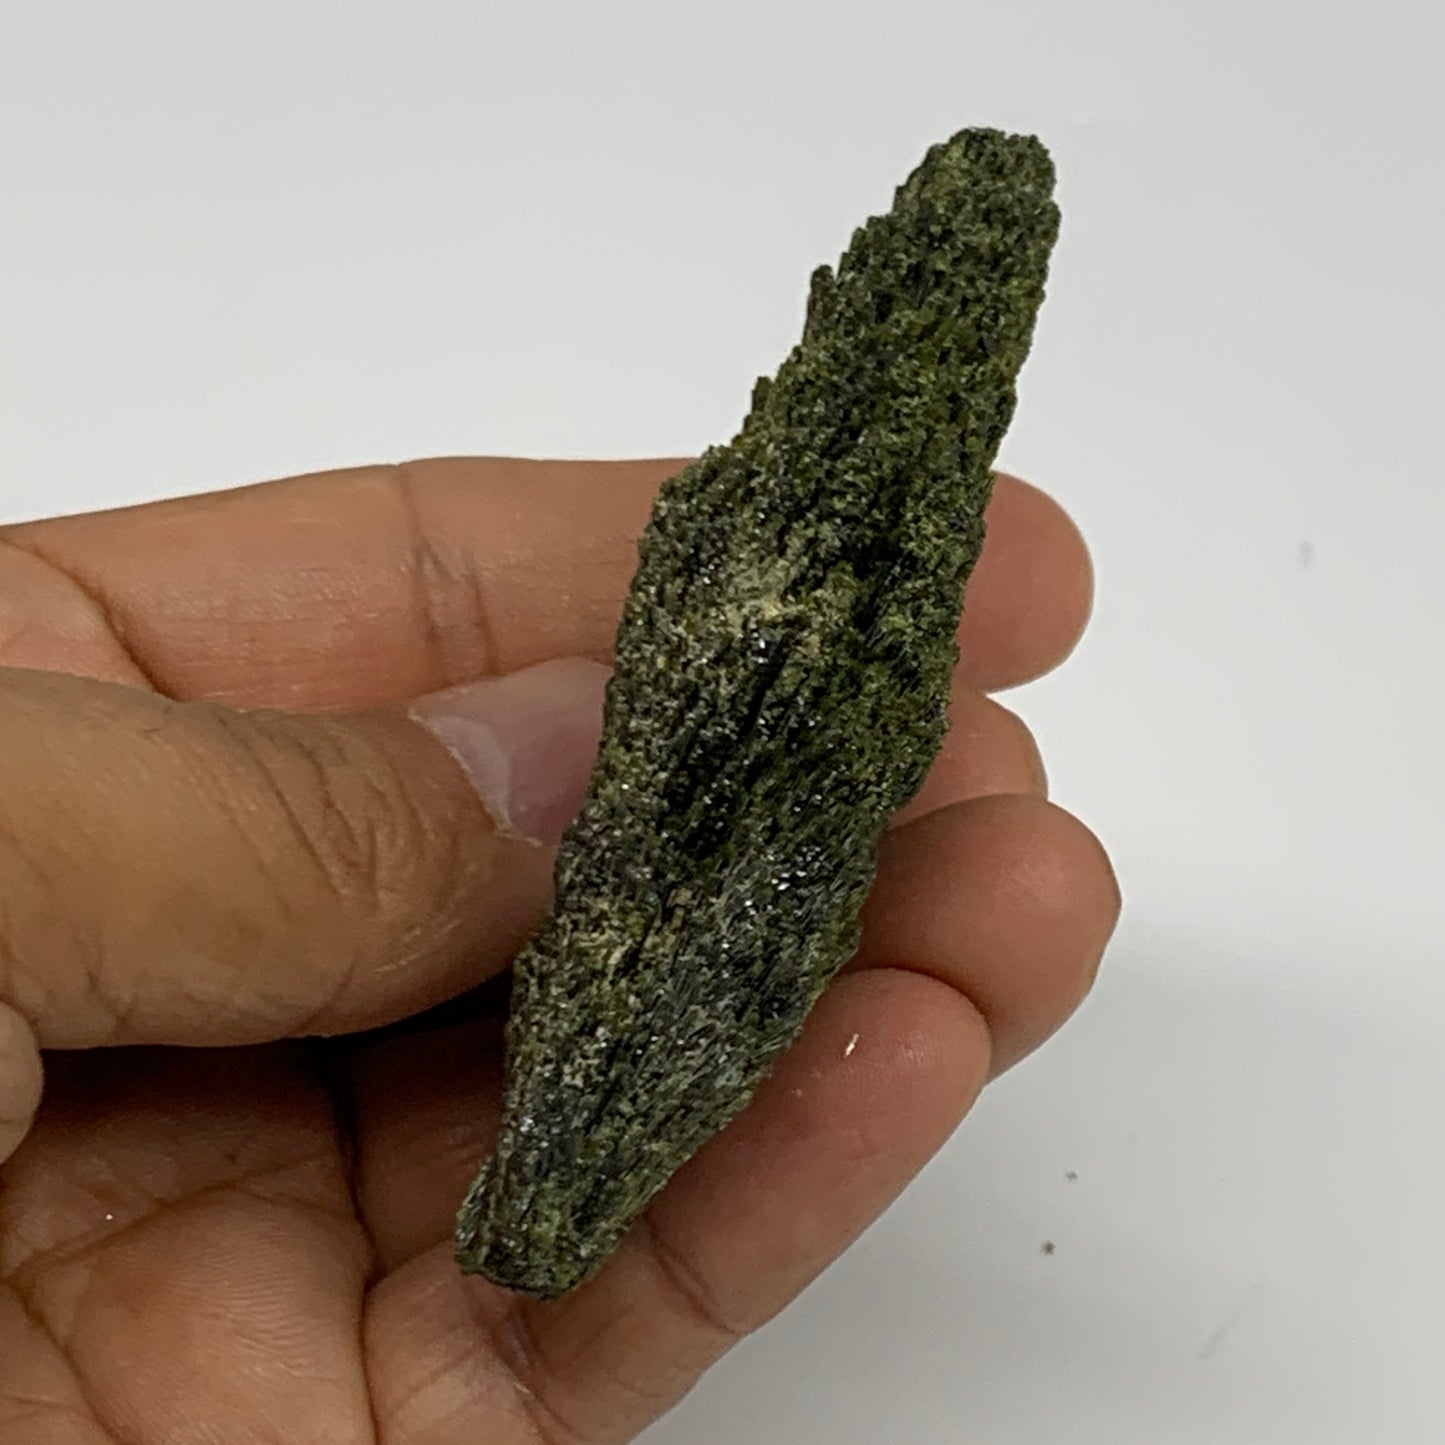 62g,2.9"x1.7"x0.8",Green Epidote Custer/Leaf Mineral Specimen @Pakistan,B27622